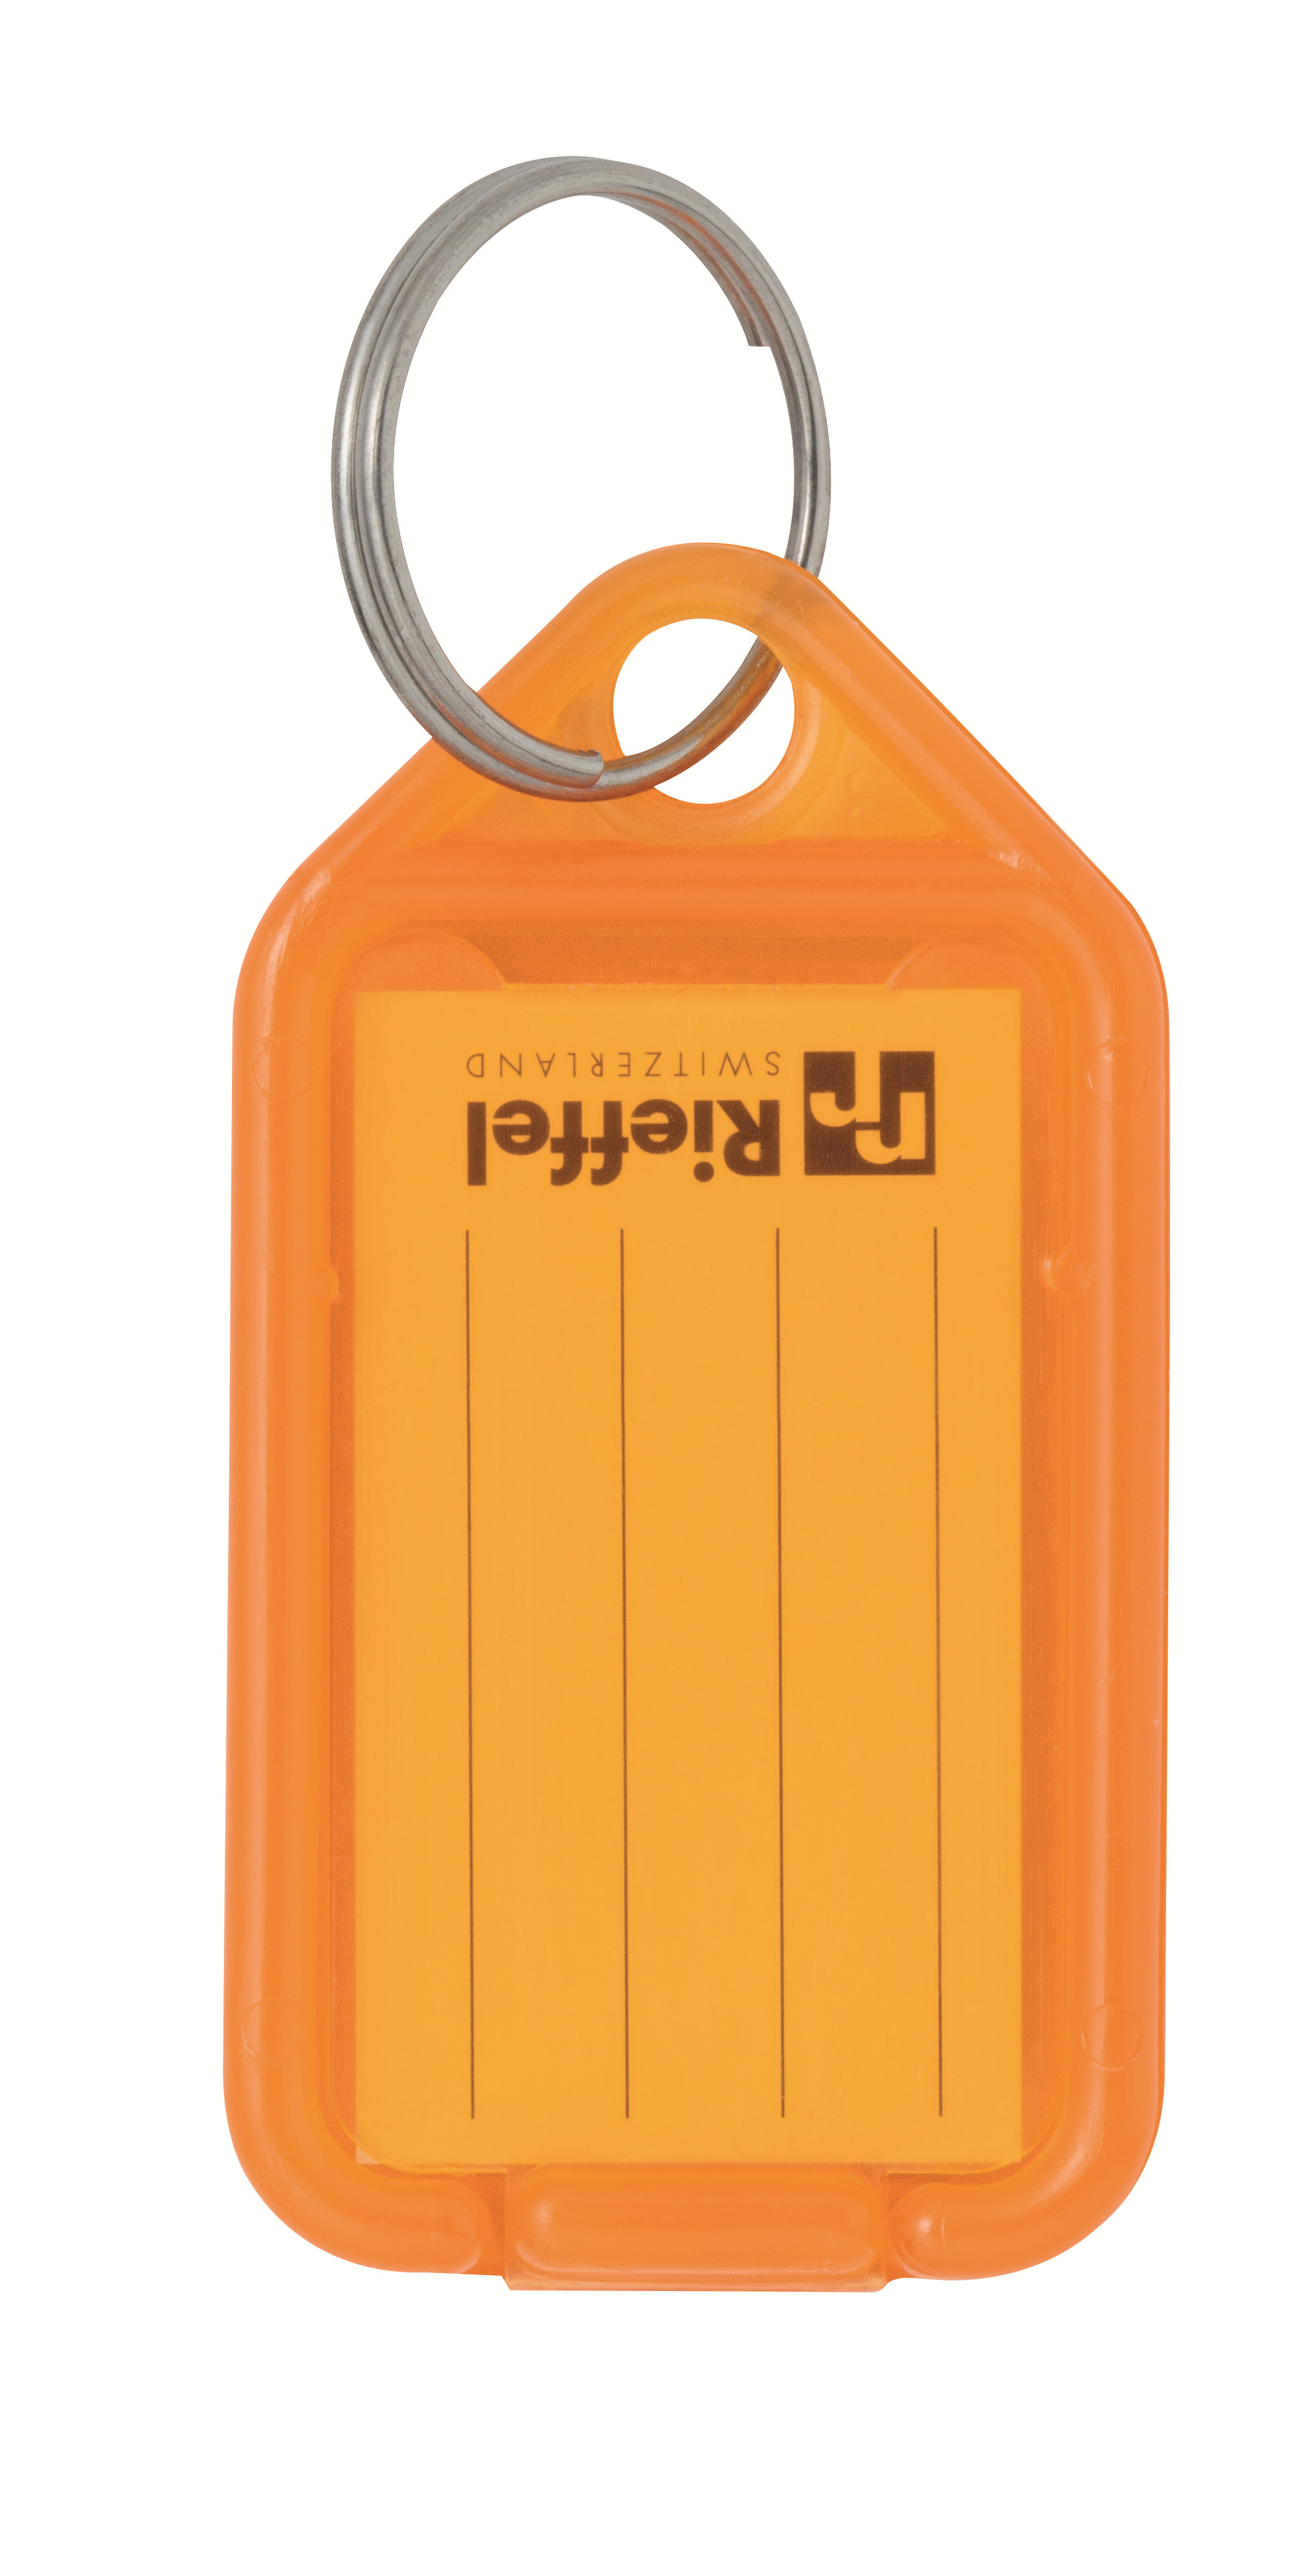 RIEFFEL Schlüsseletiketten 38x22mm KT 1000 ORAN orange 100 Stück